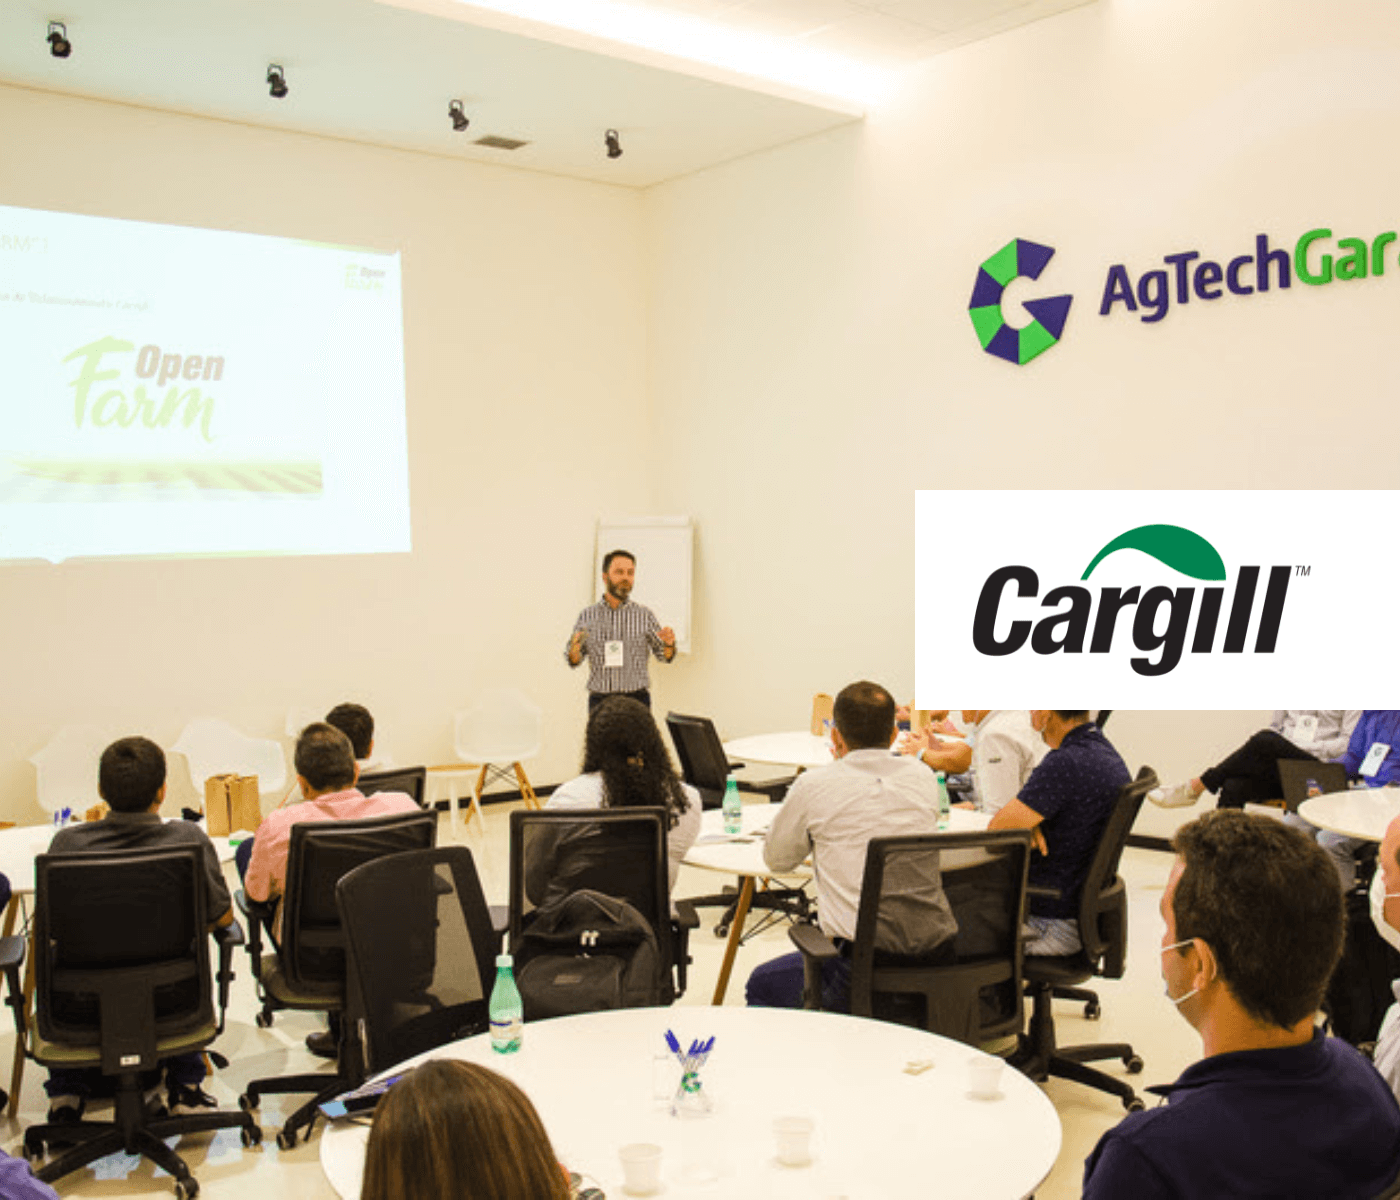  Cargill leva inovação ao campo, em parceria com AgTech Garage